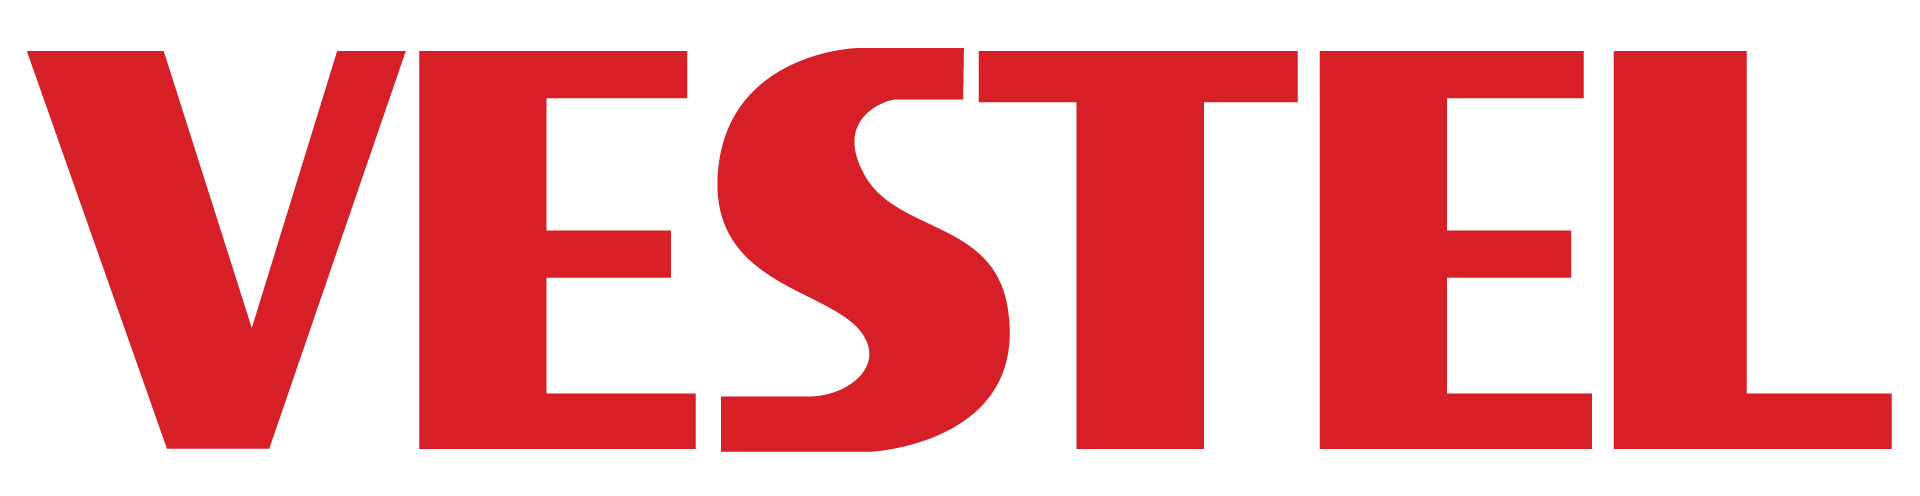 Vestel Elektronik Brand Logo